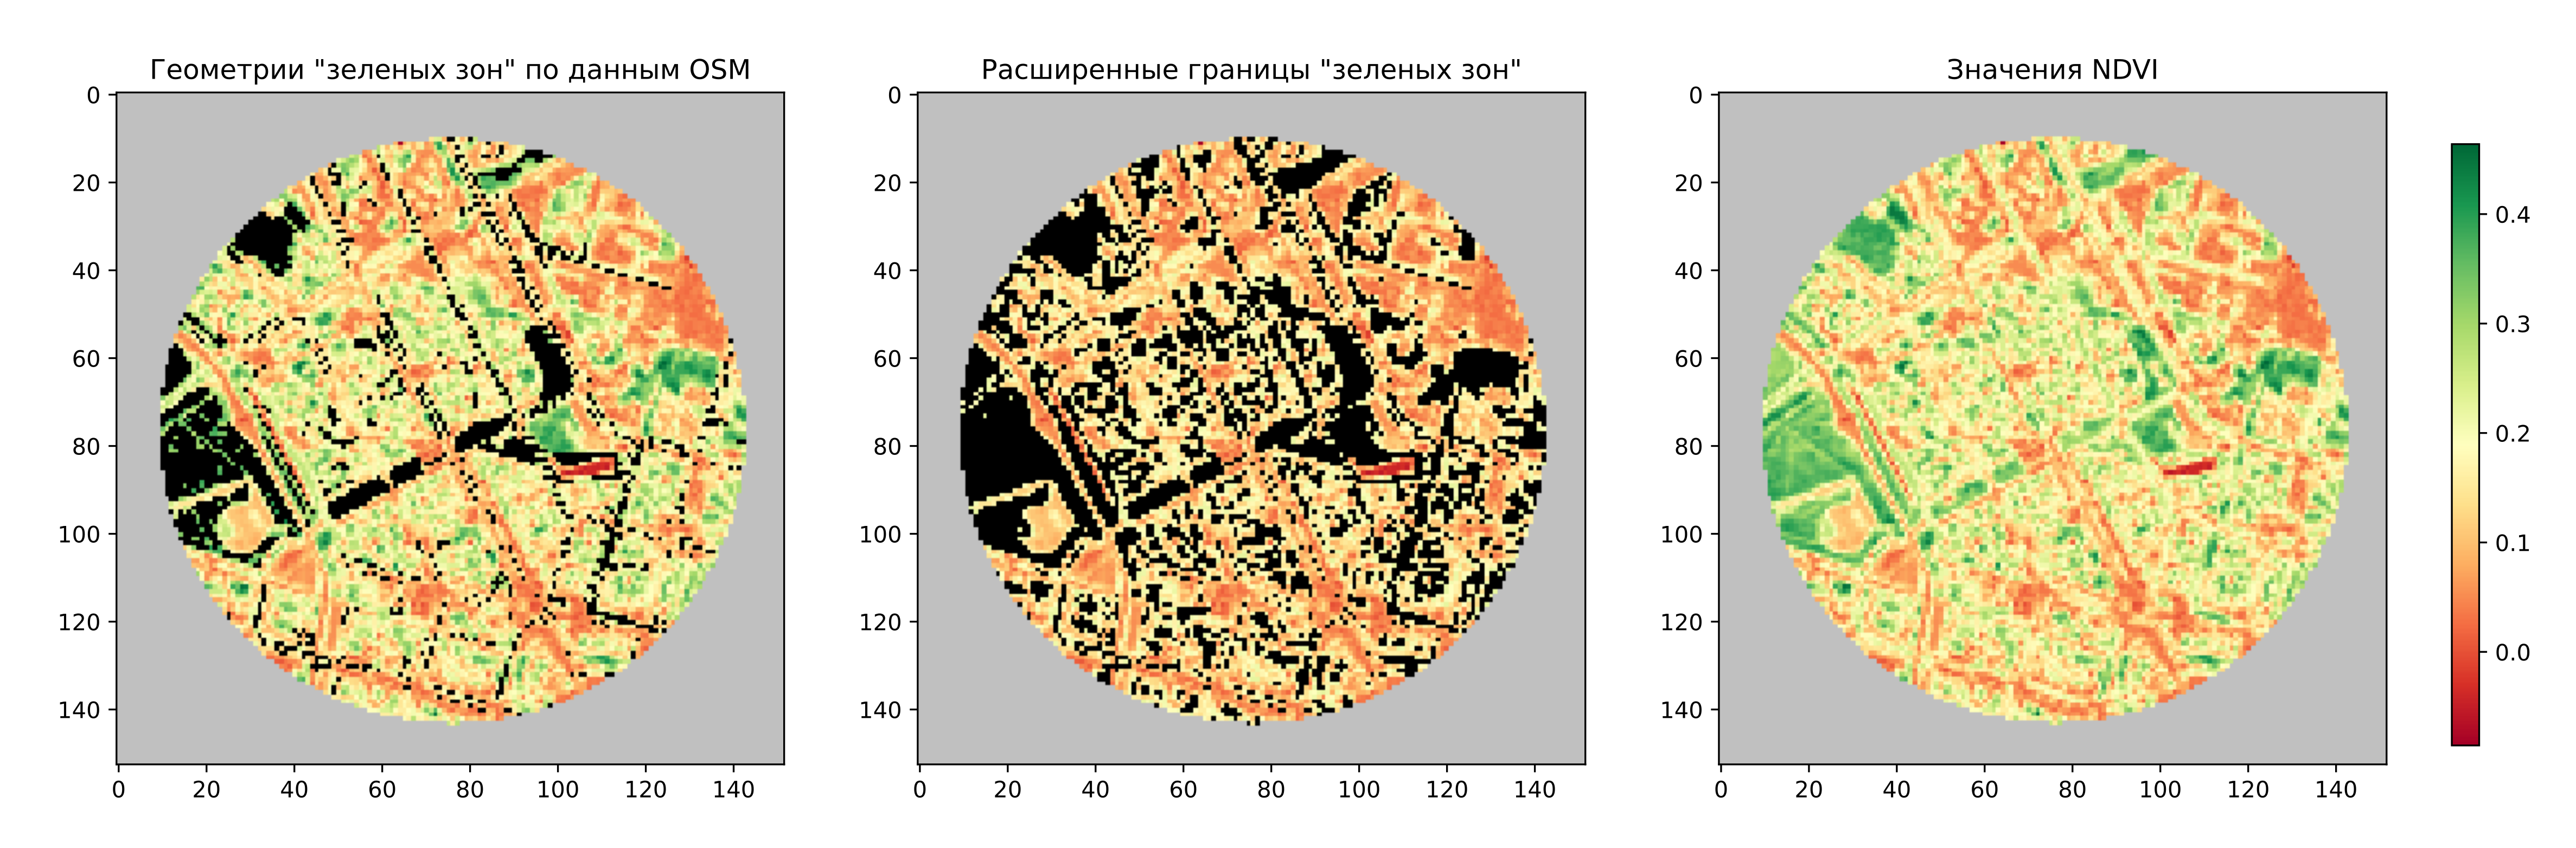 Рисунок 5. Границы зеленых зон до и после уточнения по данным Landsat